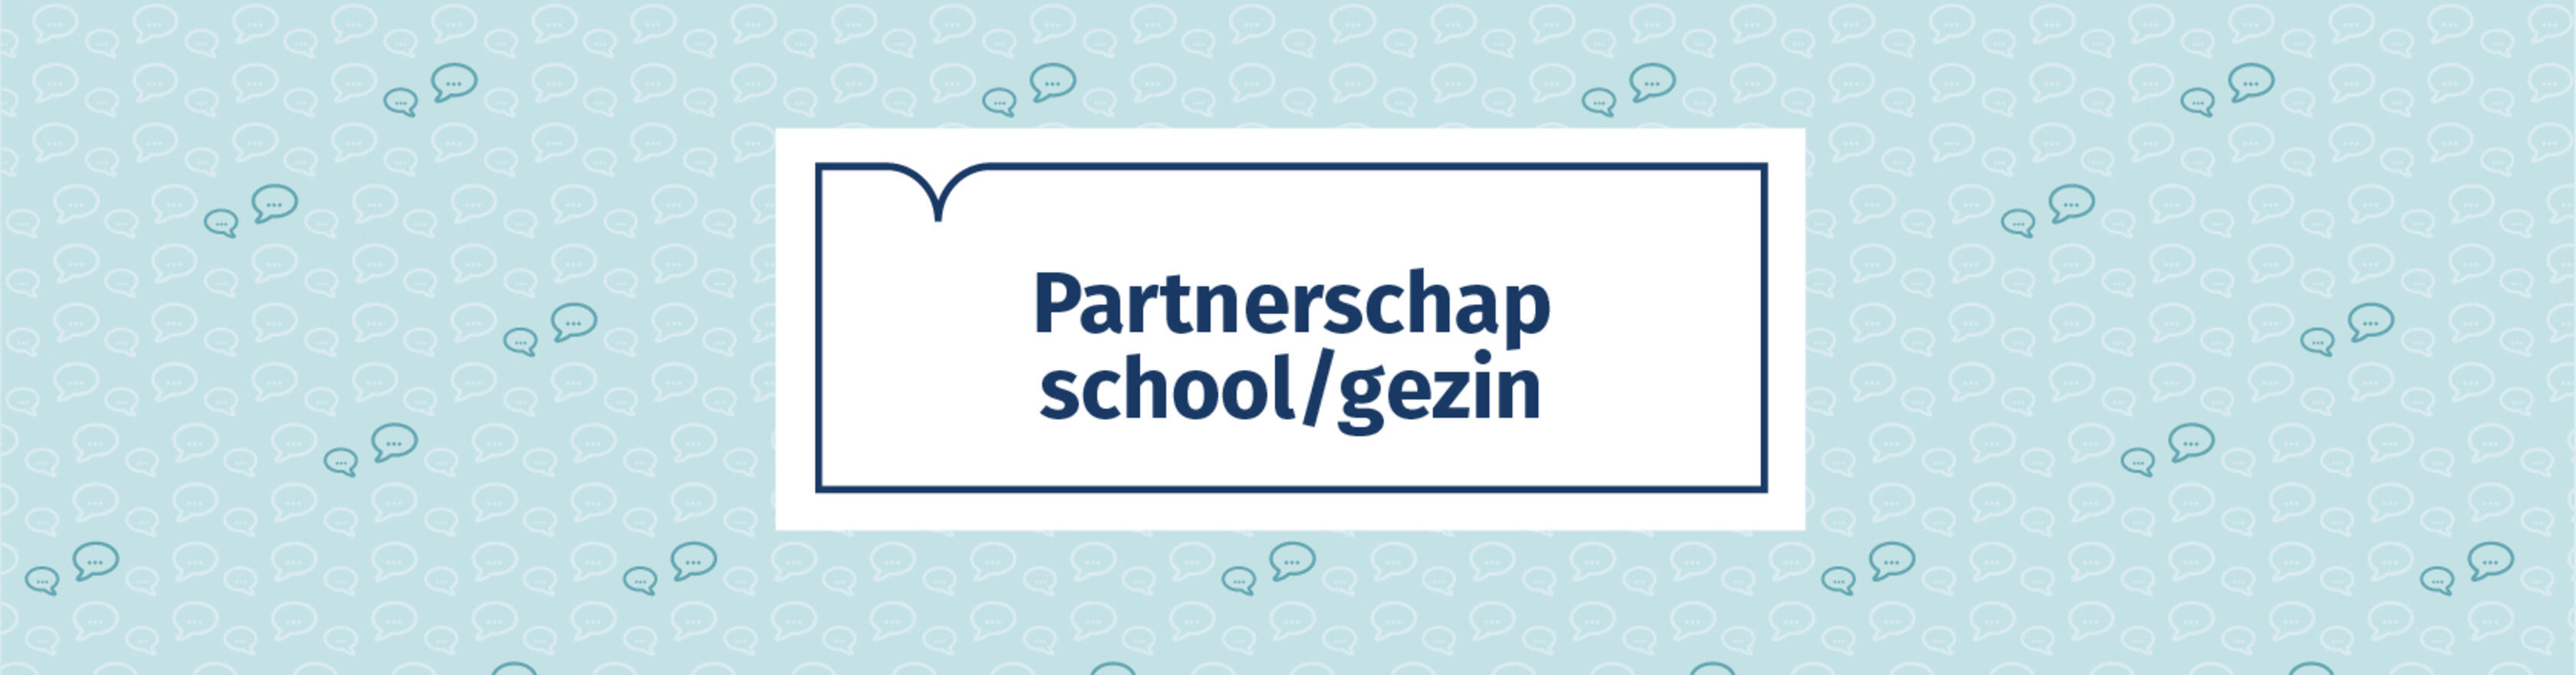 Partnerschap school/gezin header OCG